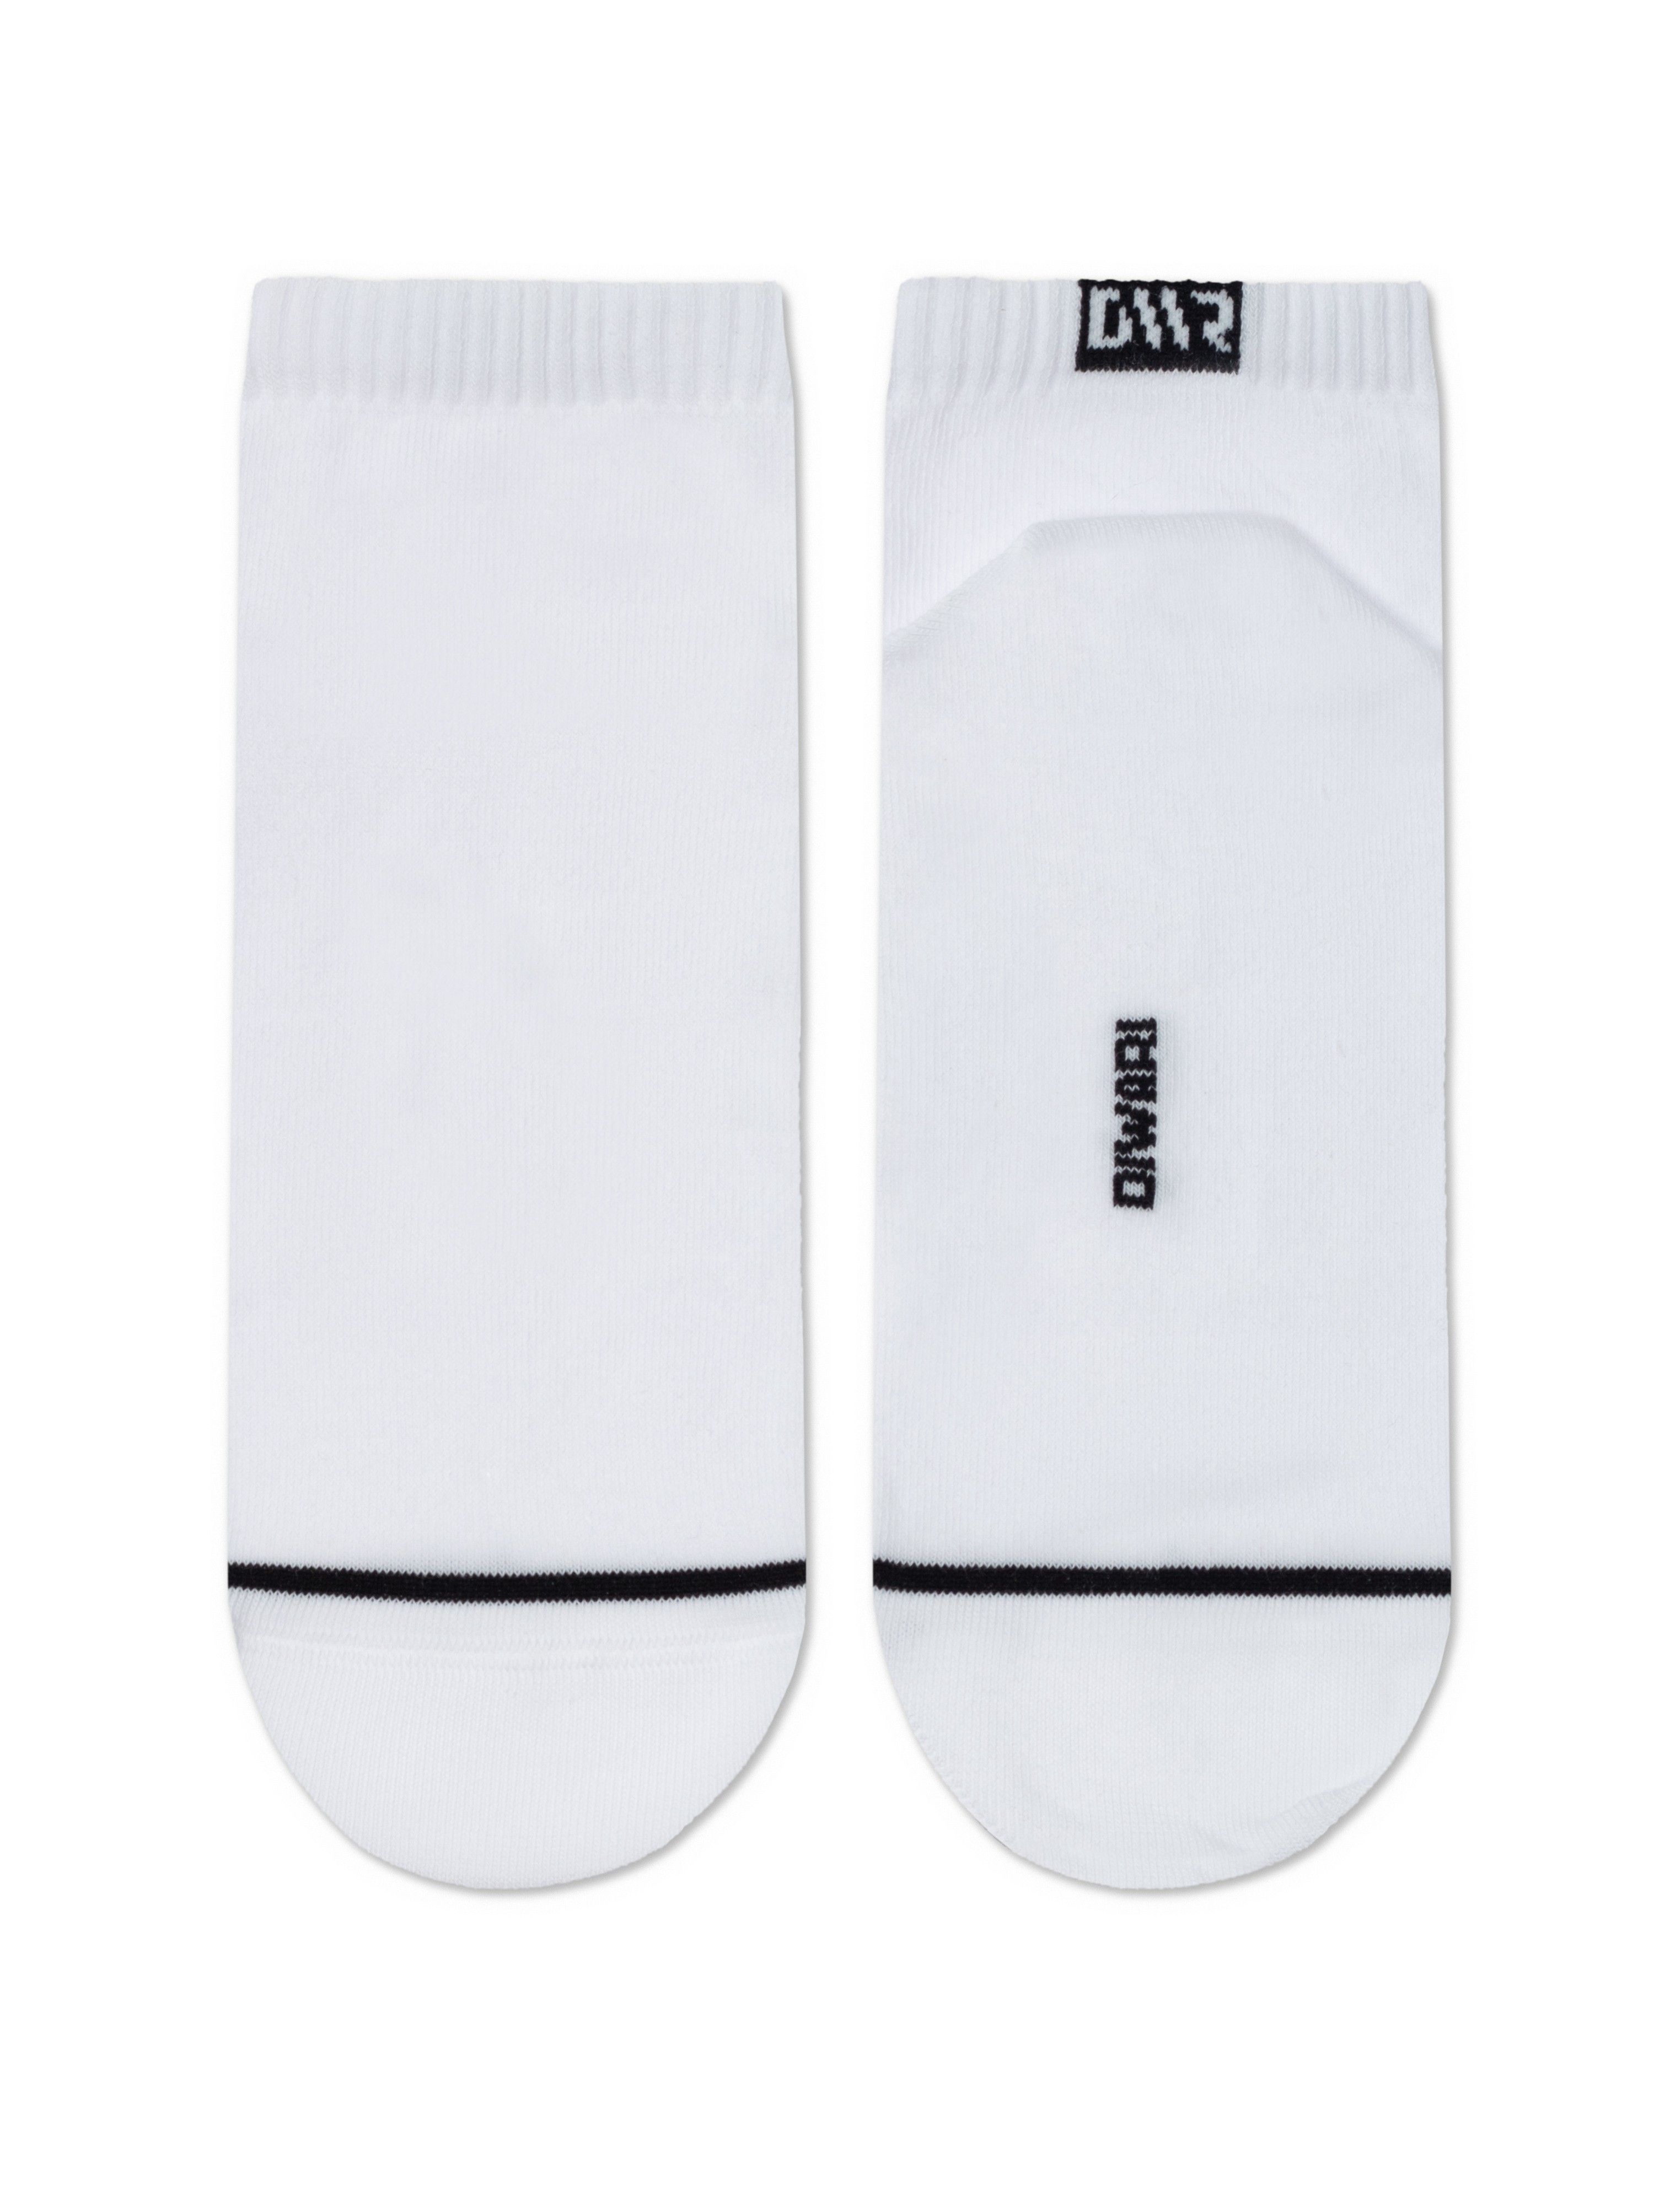 Короткие носки из хлопка с отсылкой к логотипу бренда Conte ⭐️, цвет белый, размер 40-41